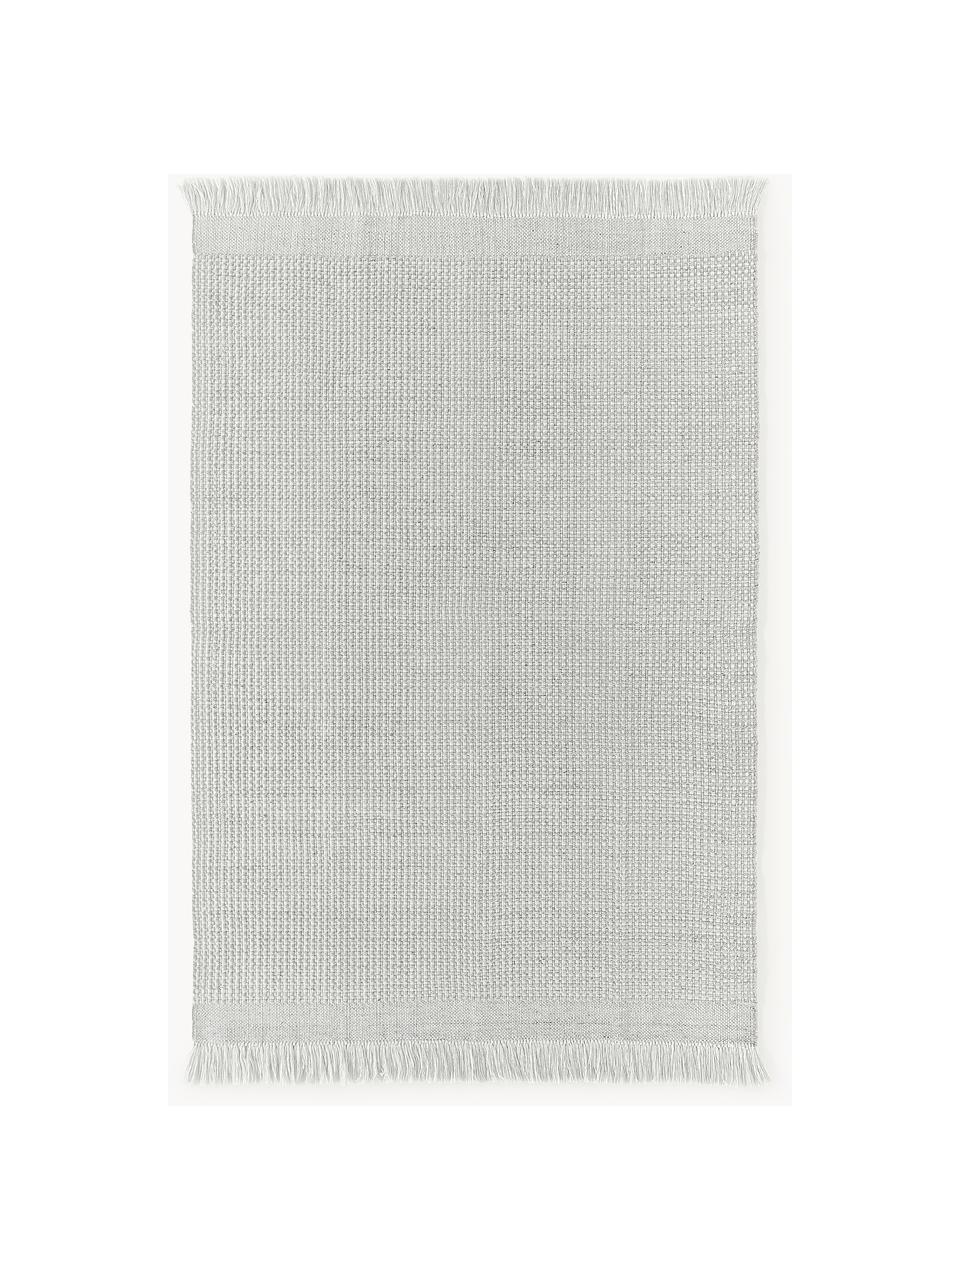 Tapis tissé à plat avec franges Ryder, 100 % polyester, certifié GRS, Gris clair, blanc, larg. 120 x long. 180 cm (taille S)